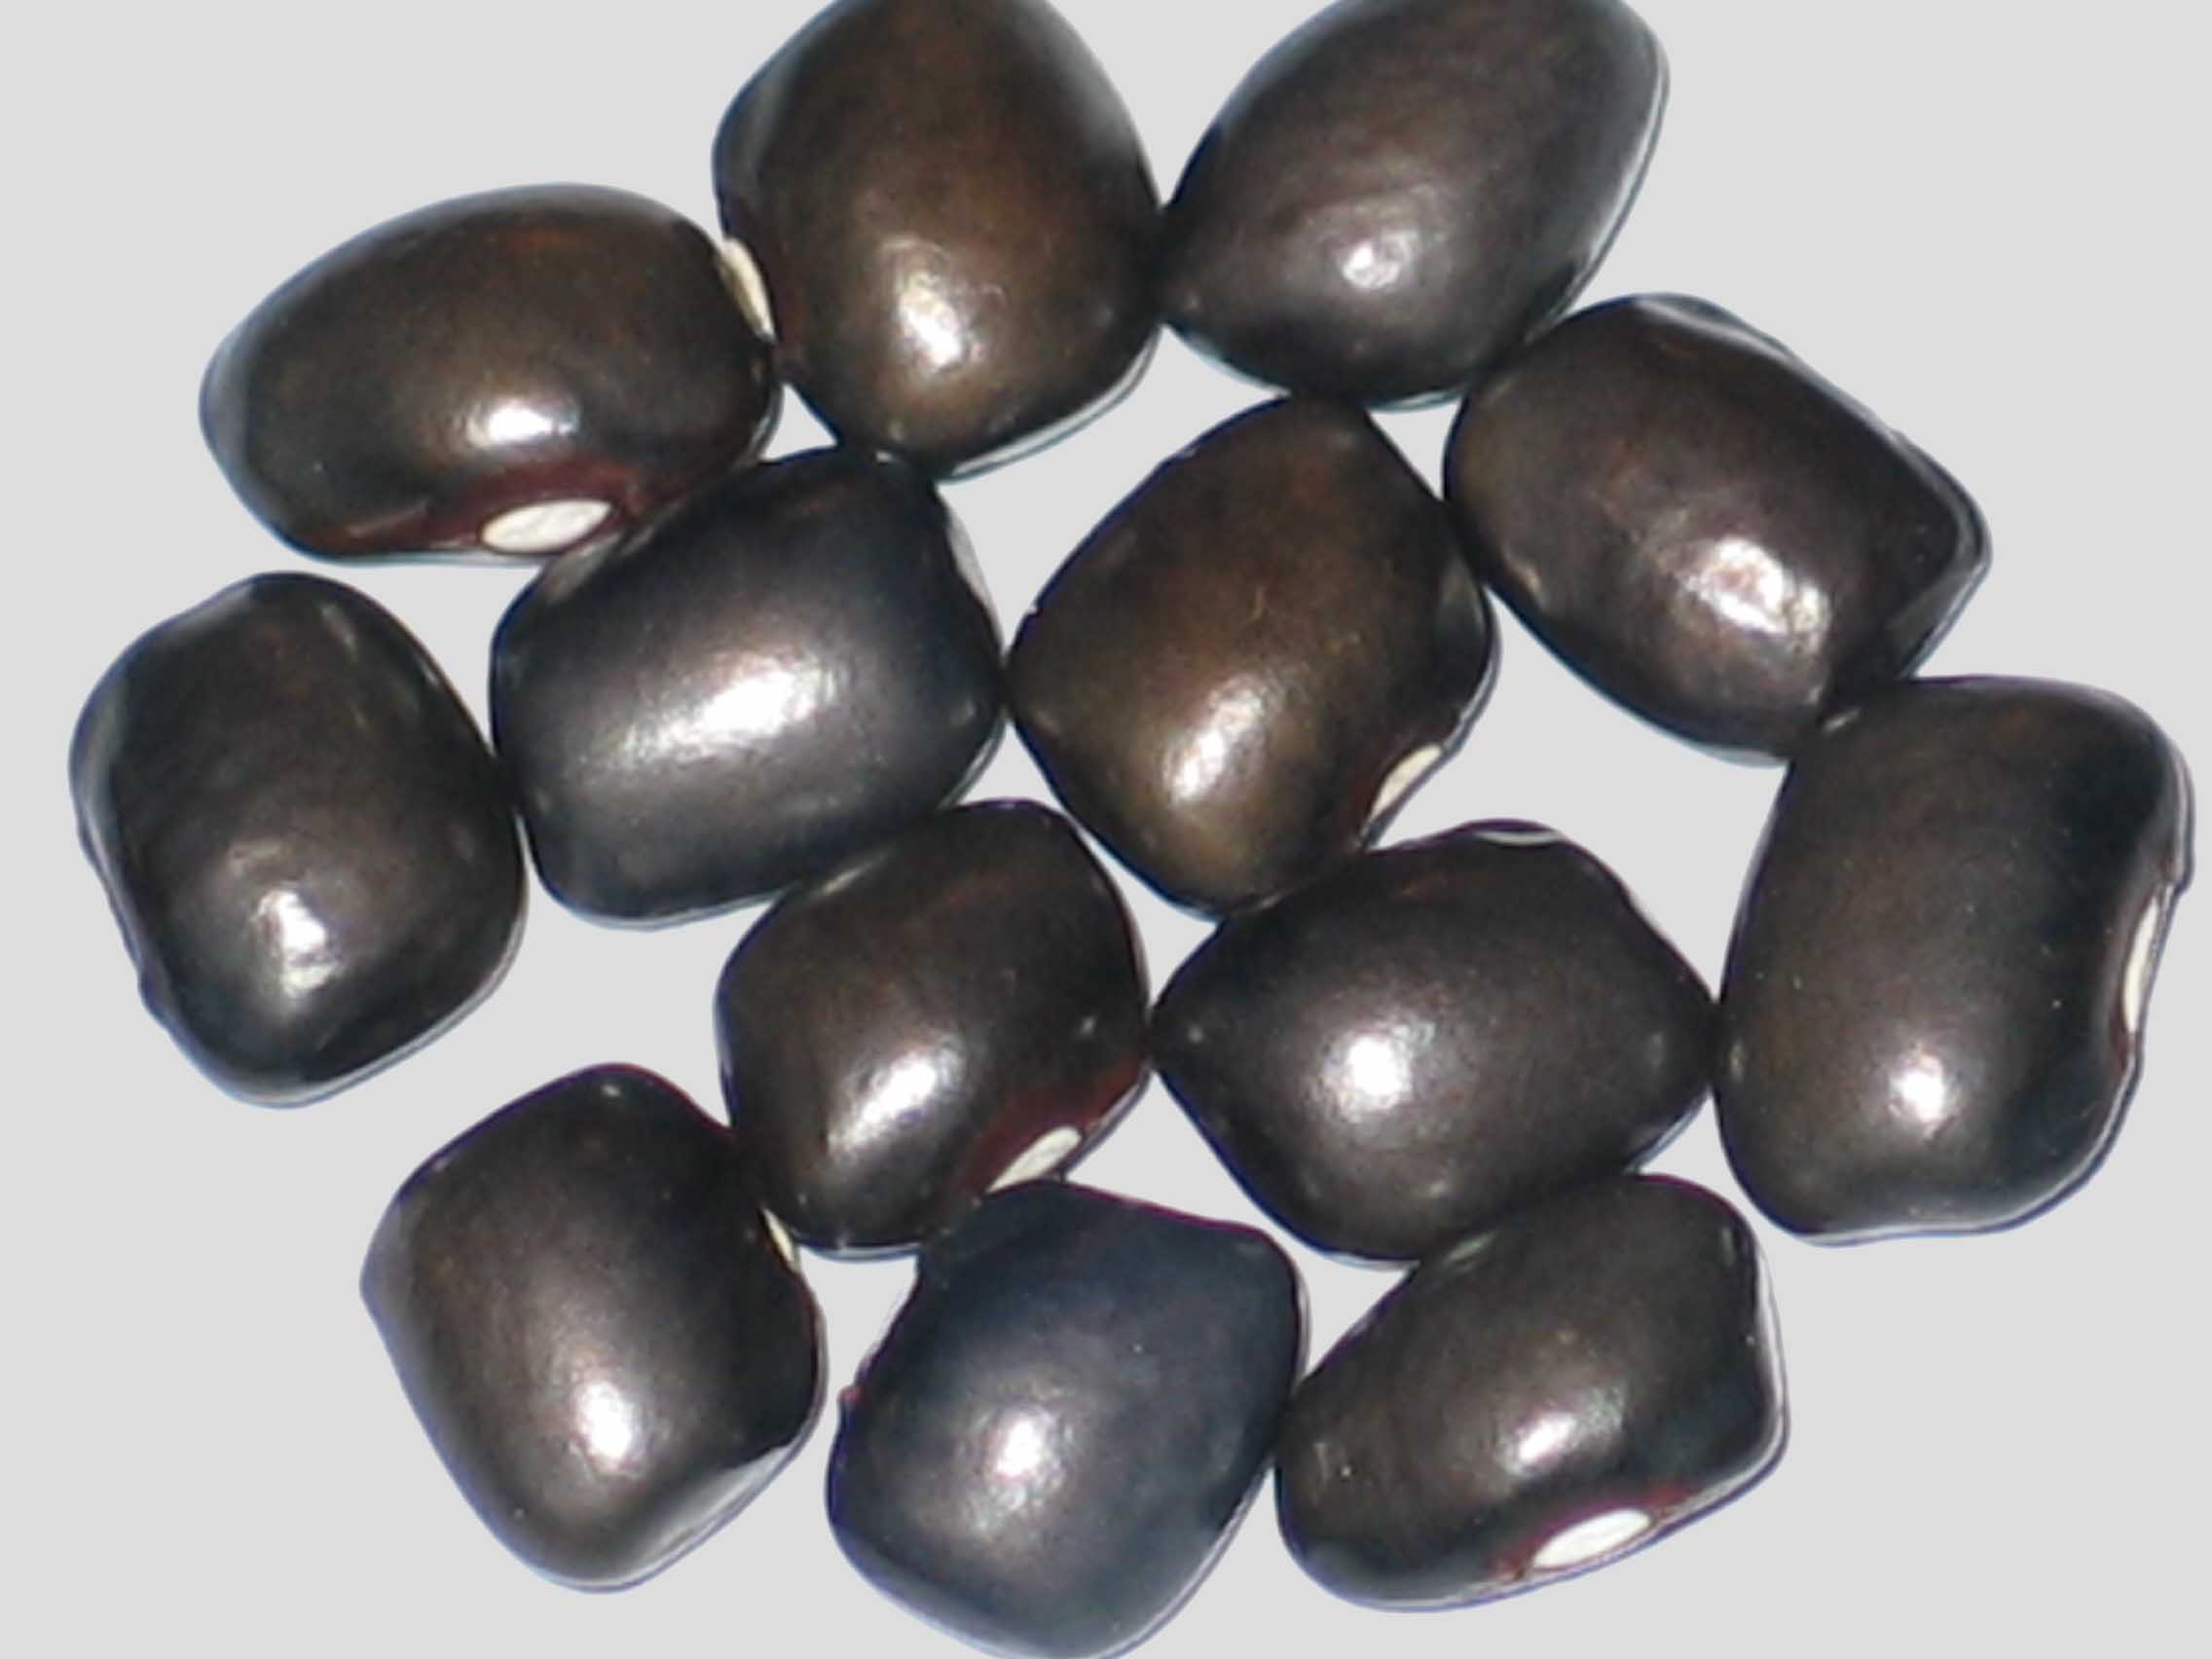 image of Meerbarbe beans